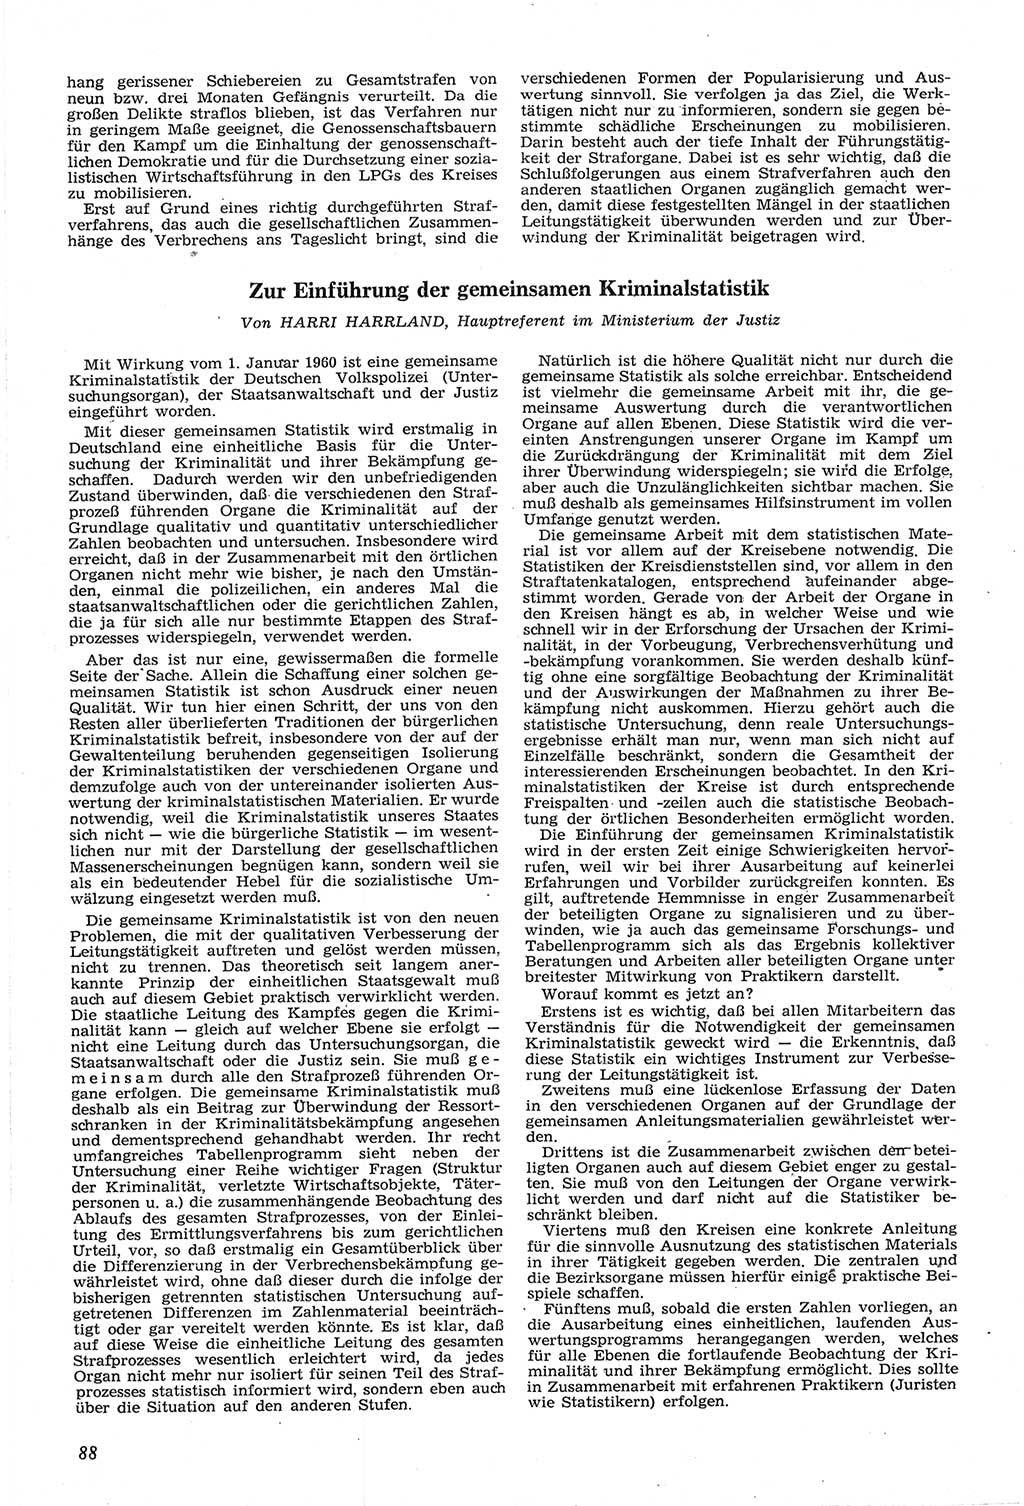 Neue Justiz (NJ), Zeitschrift für Recht und Rechtswissenschaft [Deutsche Demokratische Republik (DDR)], 14. Jahrgang 1960, Seite 88 (NJ DDR 1960, S. 88)